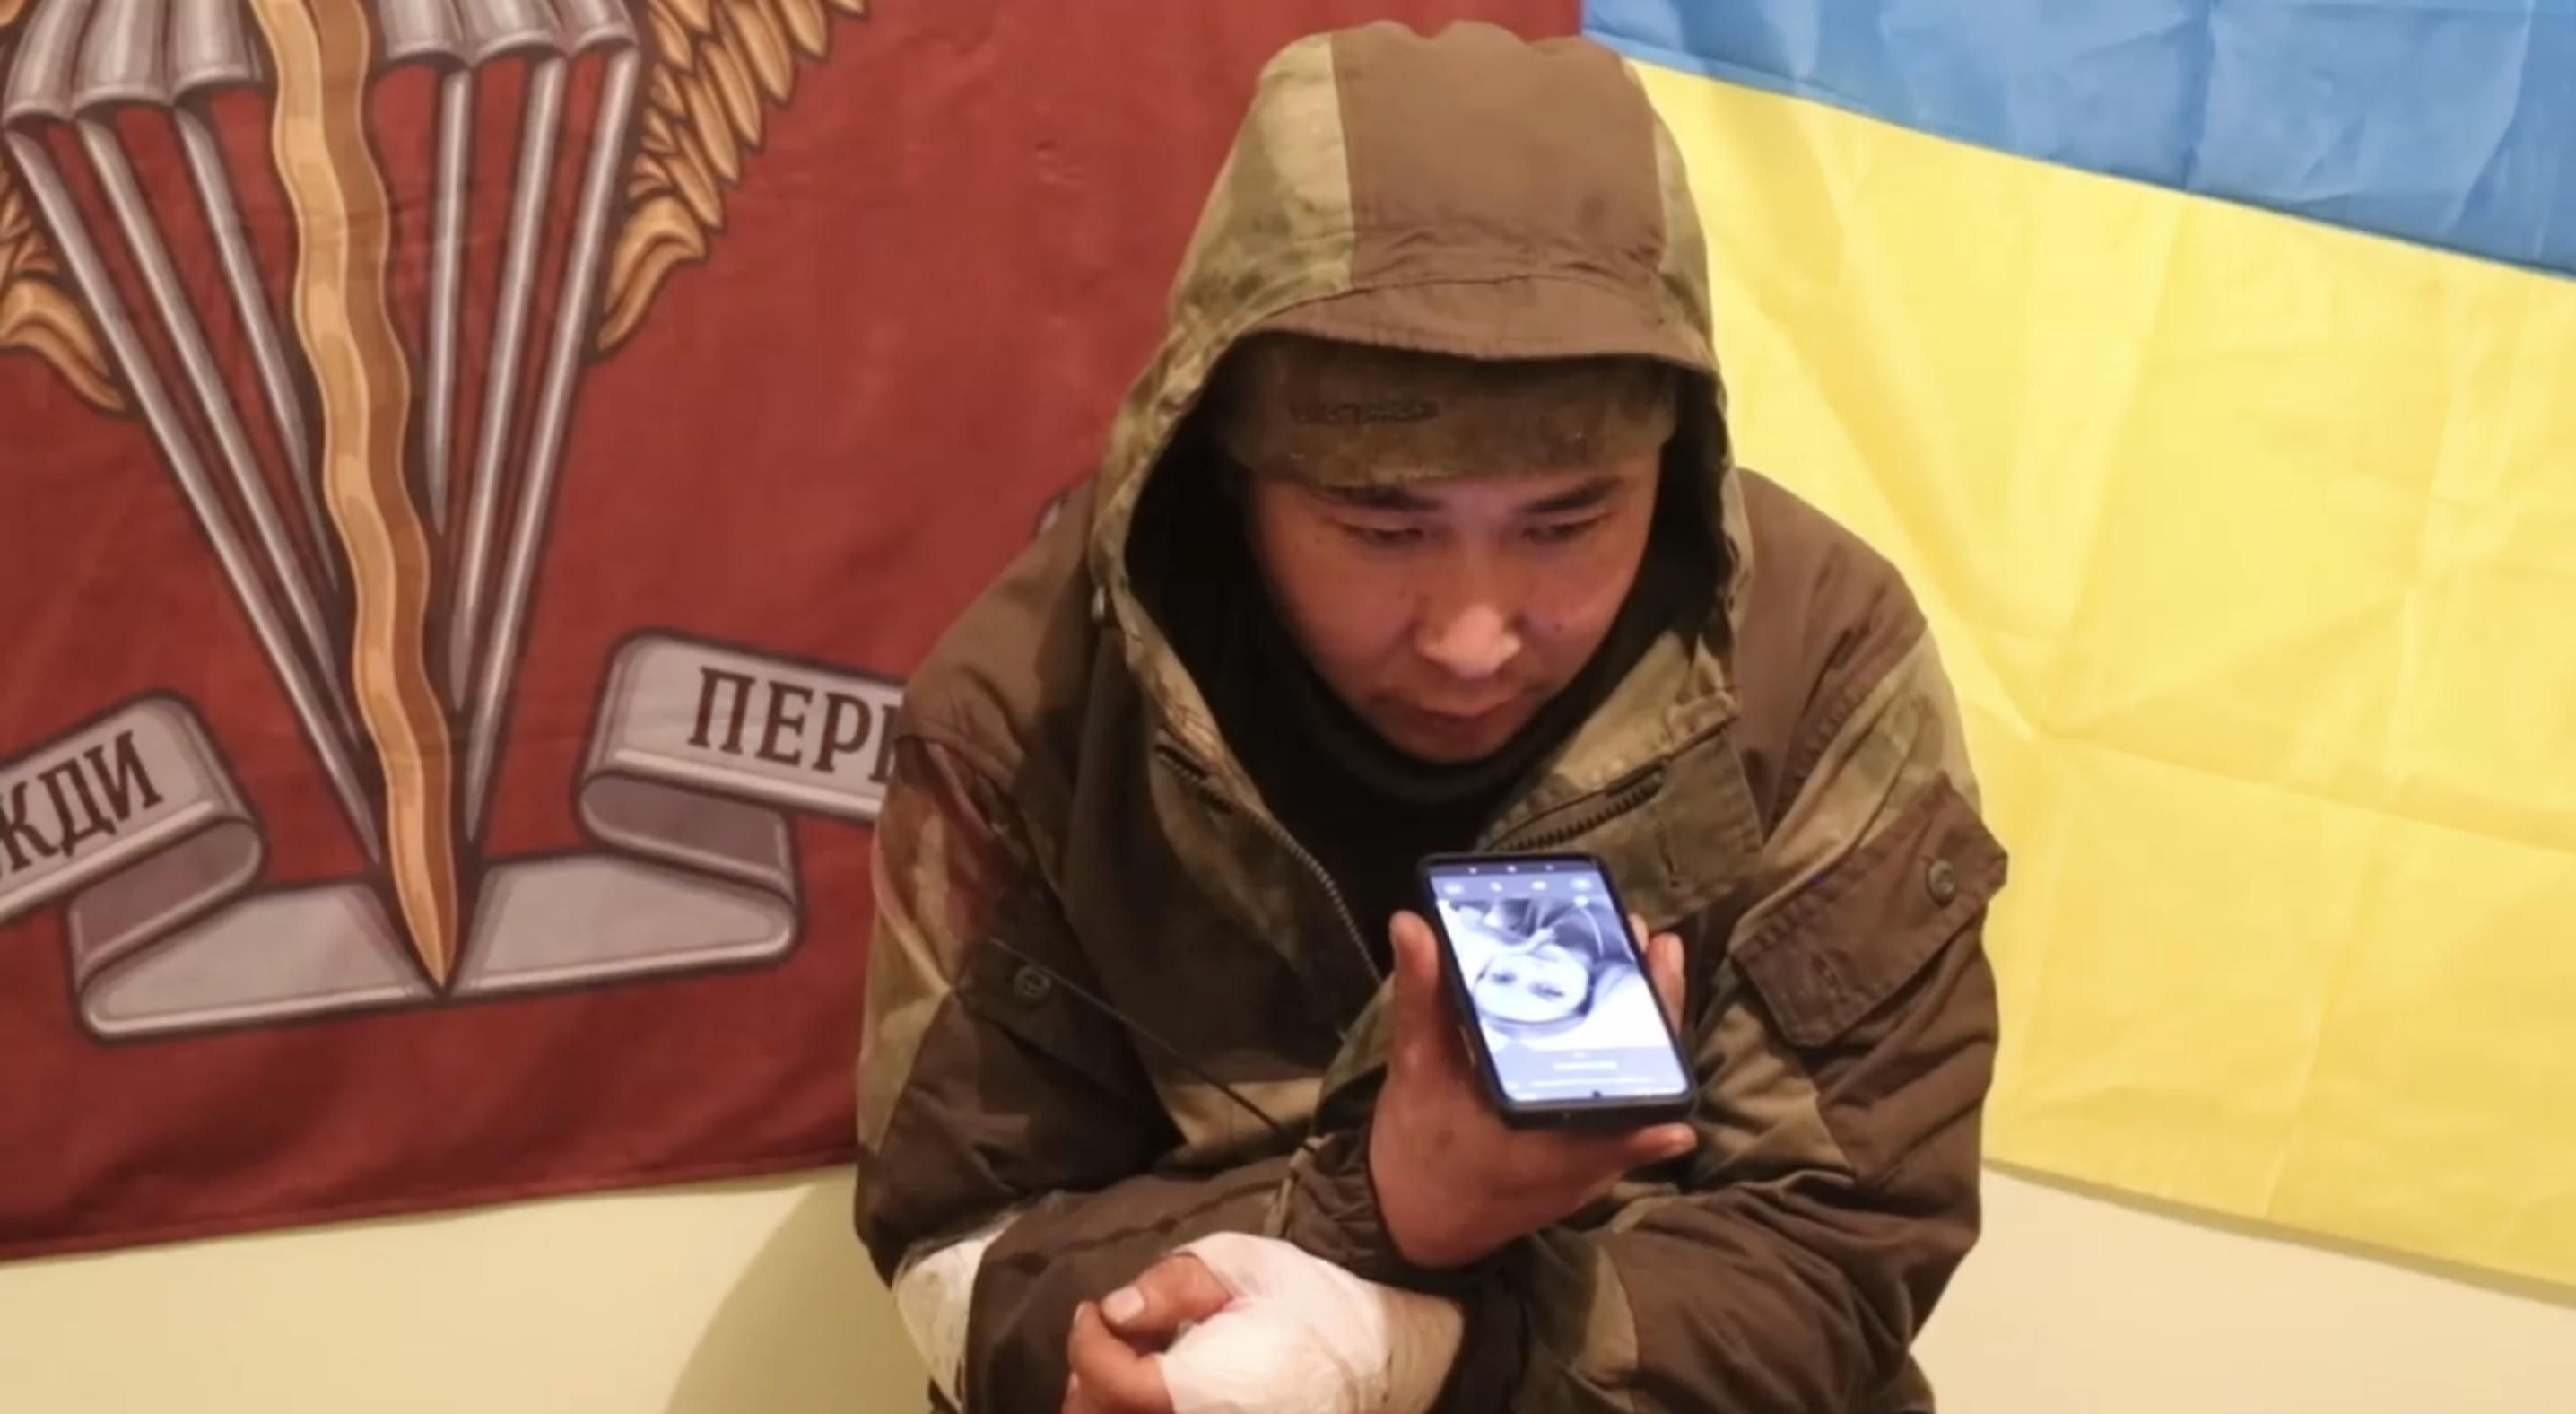 "Нет никакой родины": разговор пленного бурята с любимой в России